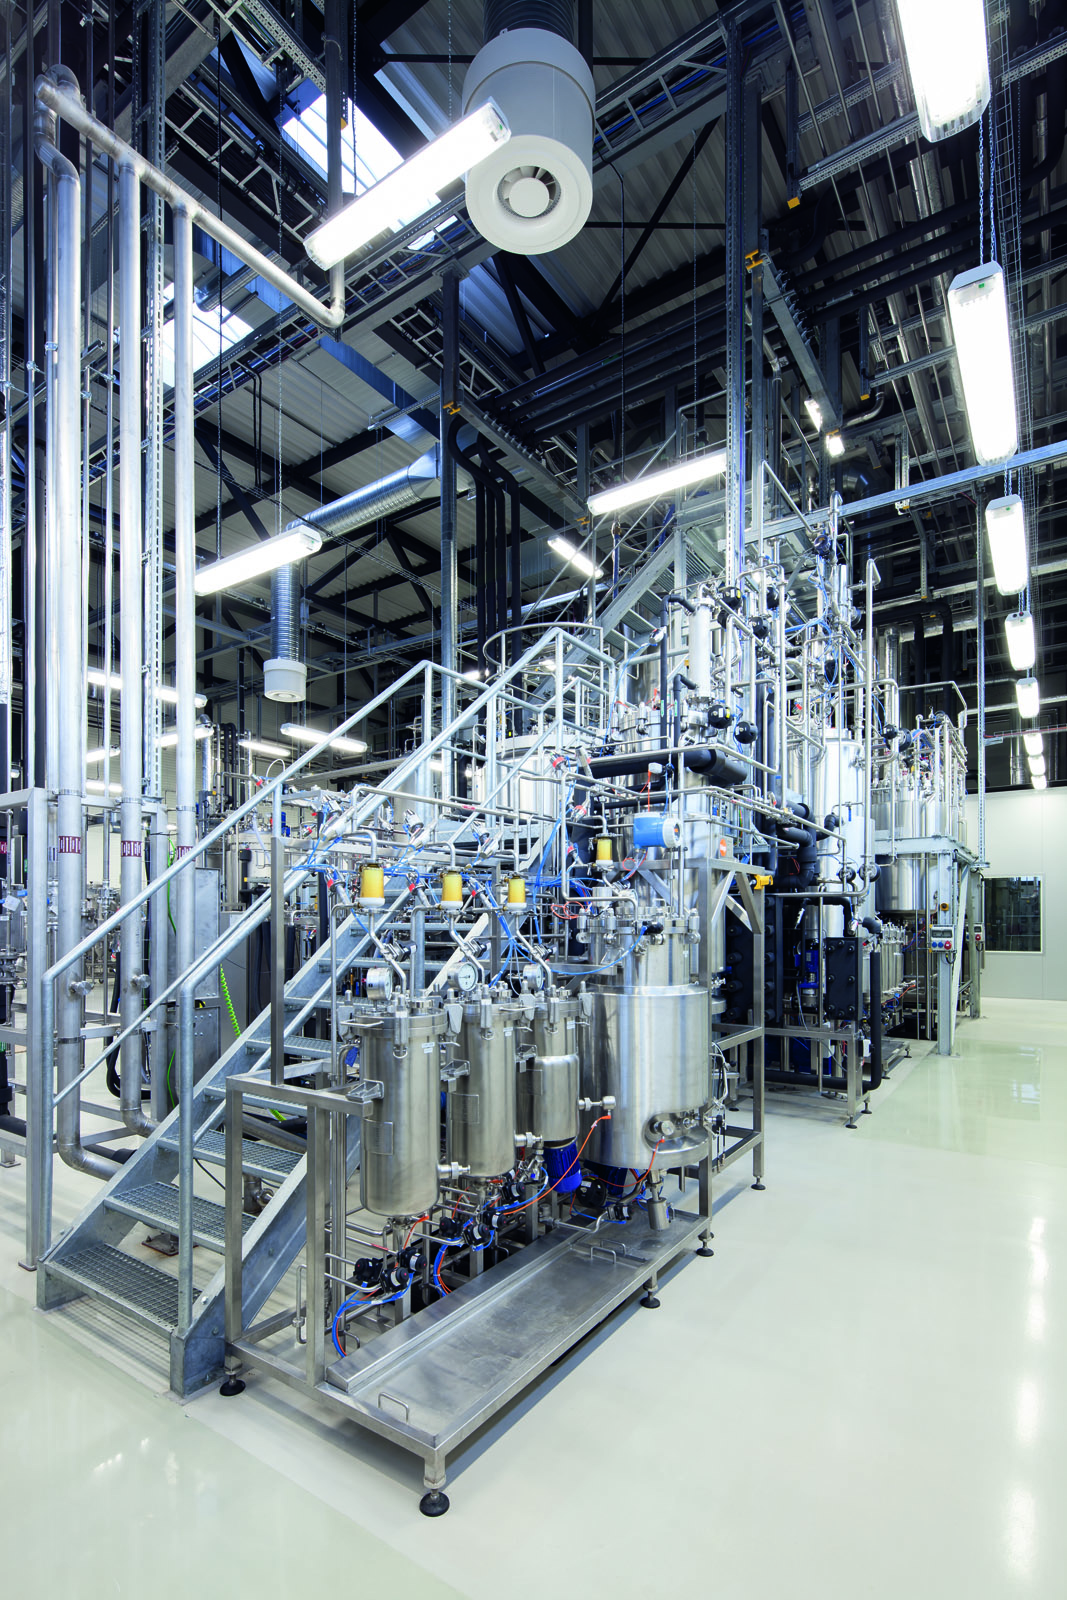 Fermenterkaskade mit Bioreaktoren von 10 Litern bis 10 m3 Volumen am Fraunhofer-Zentrum für Chemisch-Biotechnologische Prozesse in Leuna. 